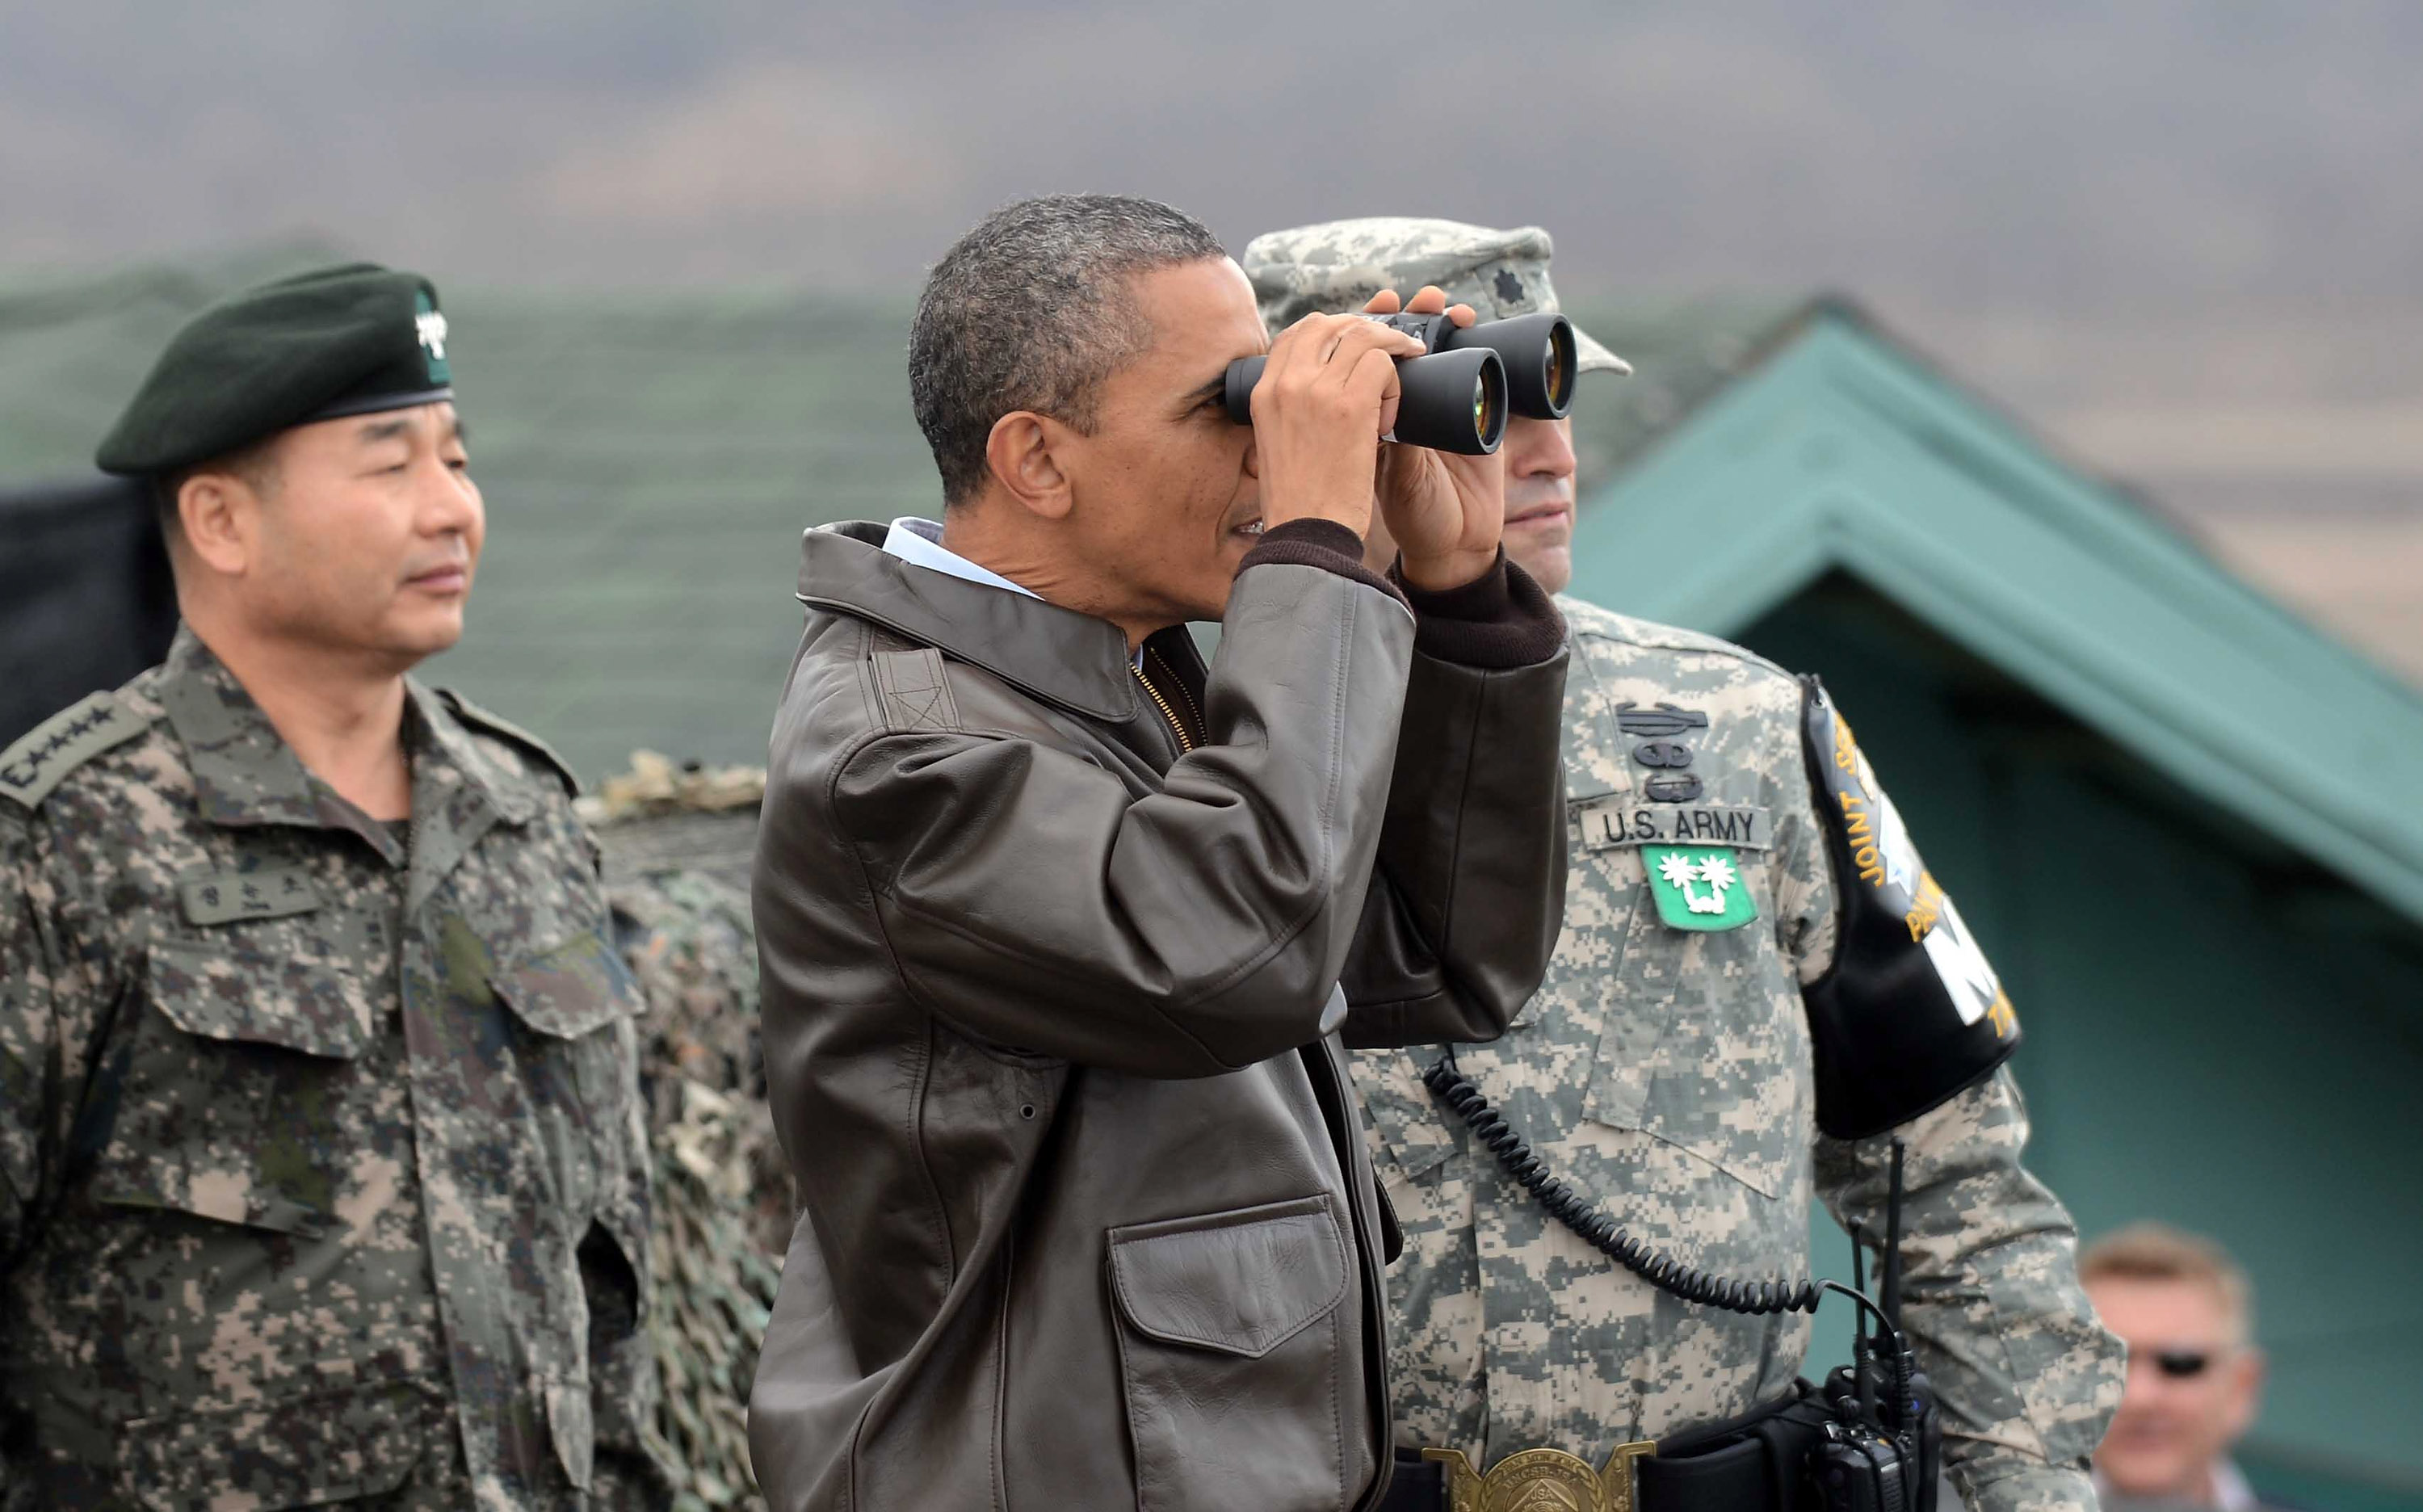 Барак Обама на территории Южной Кореи смотрит через бинокль на КНДР. Фото: Yonhap News via /Getty Images